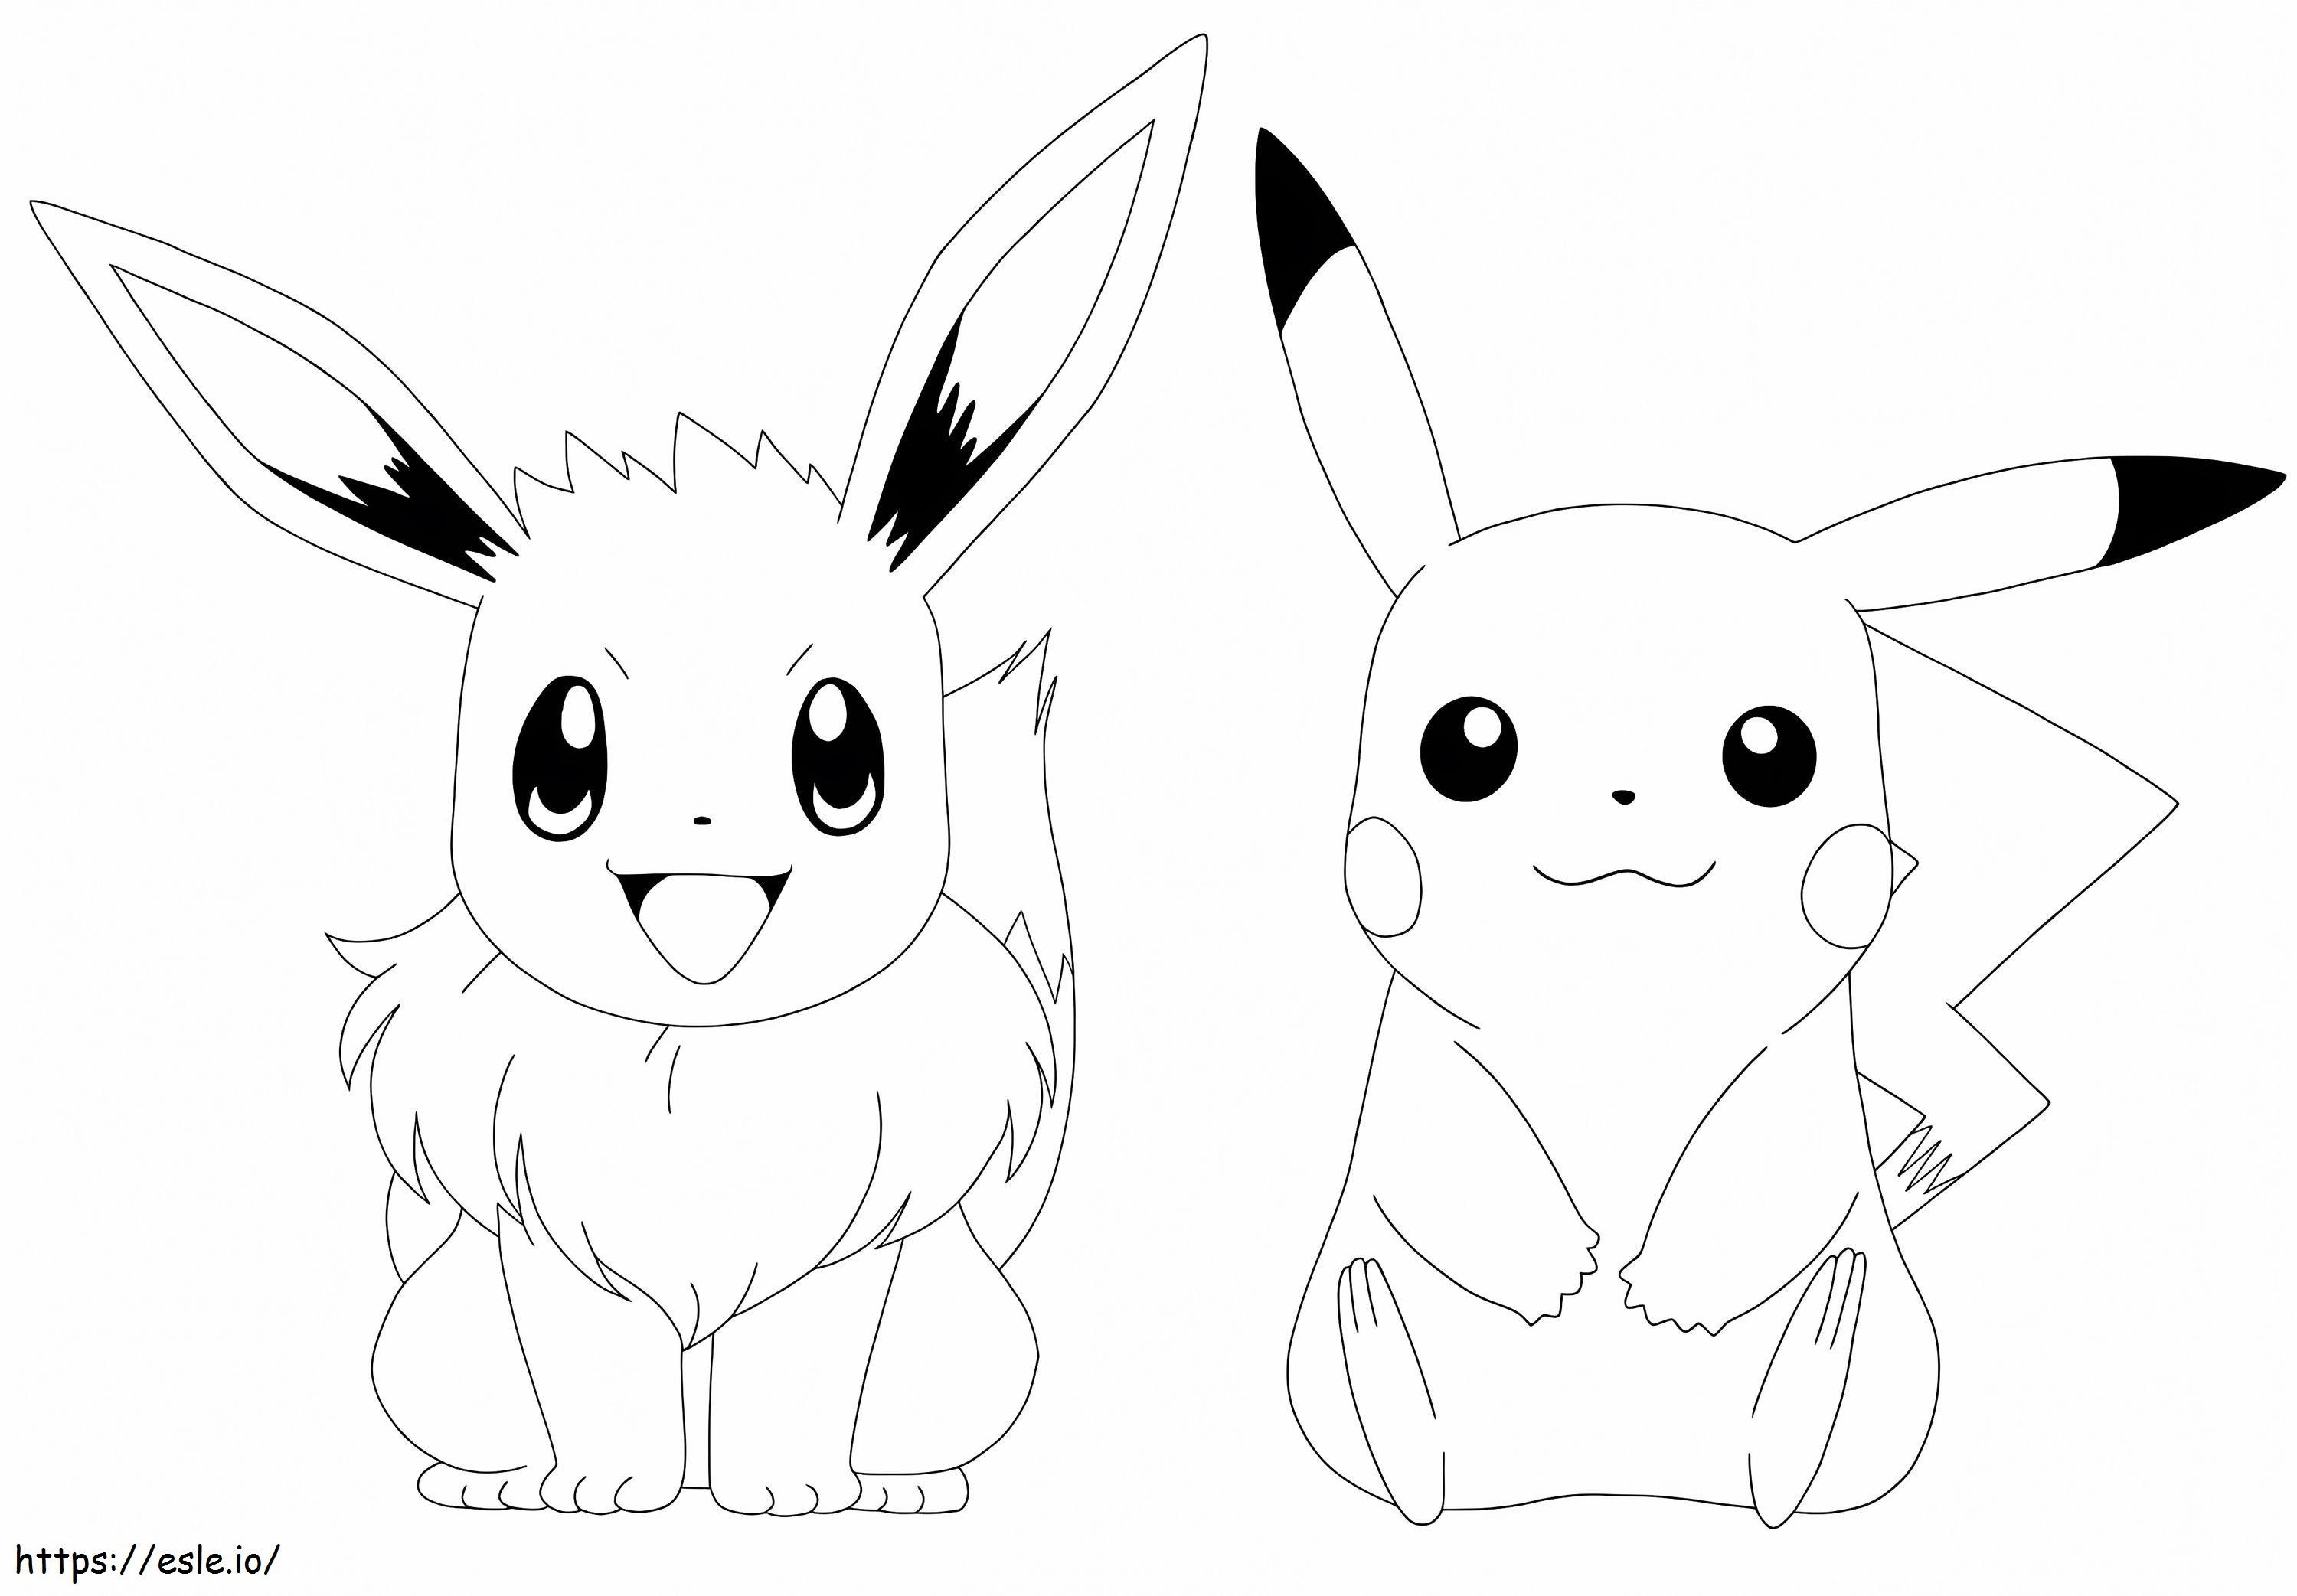 Coloriage Évoli et Pikachu à imprimer dessin